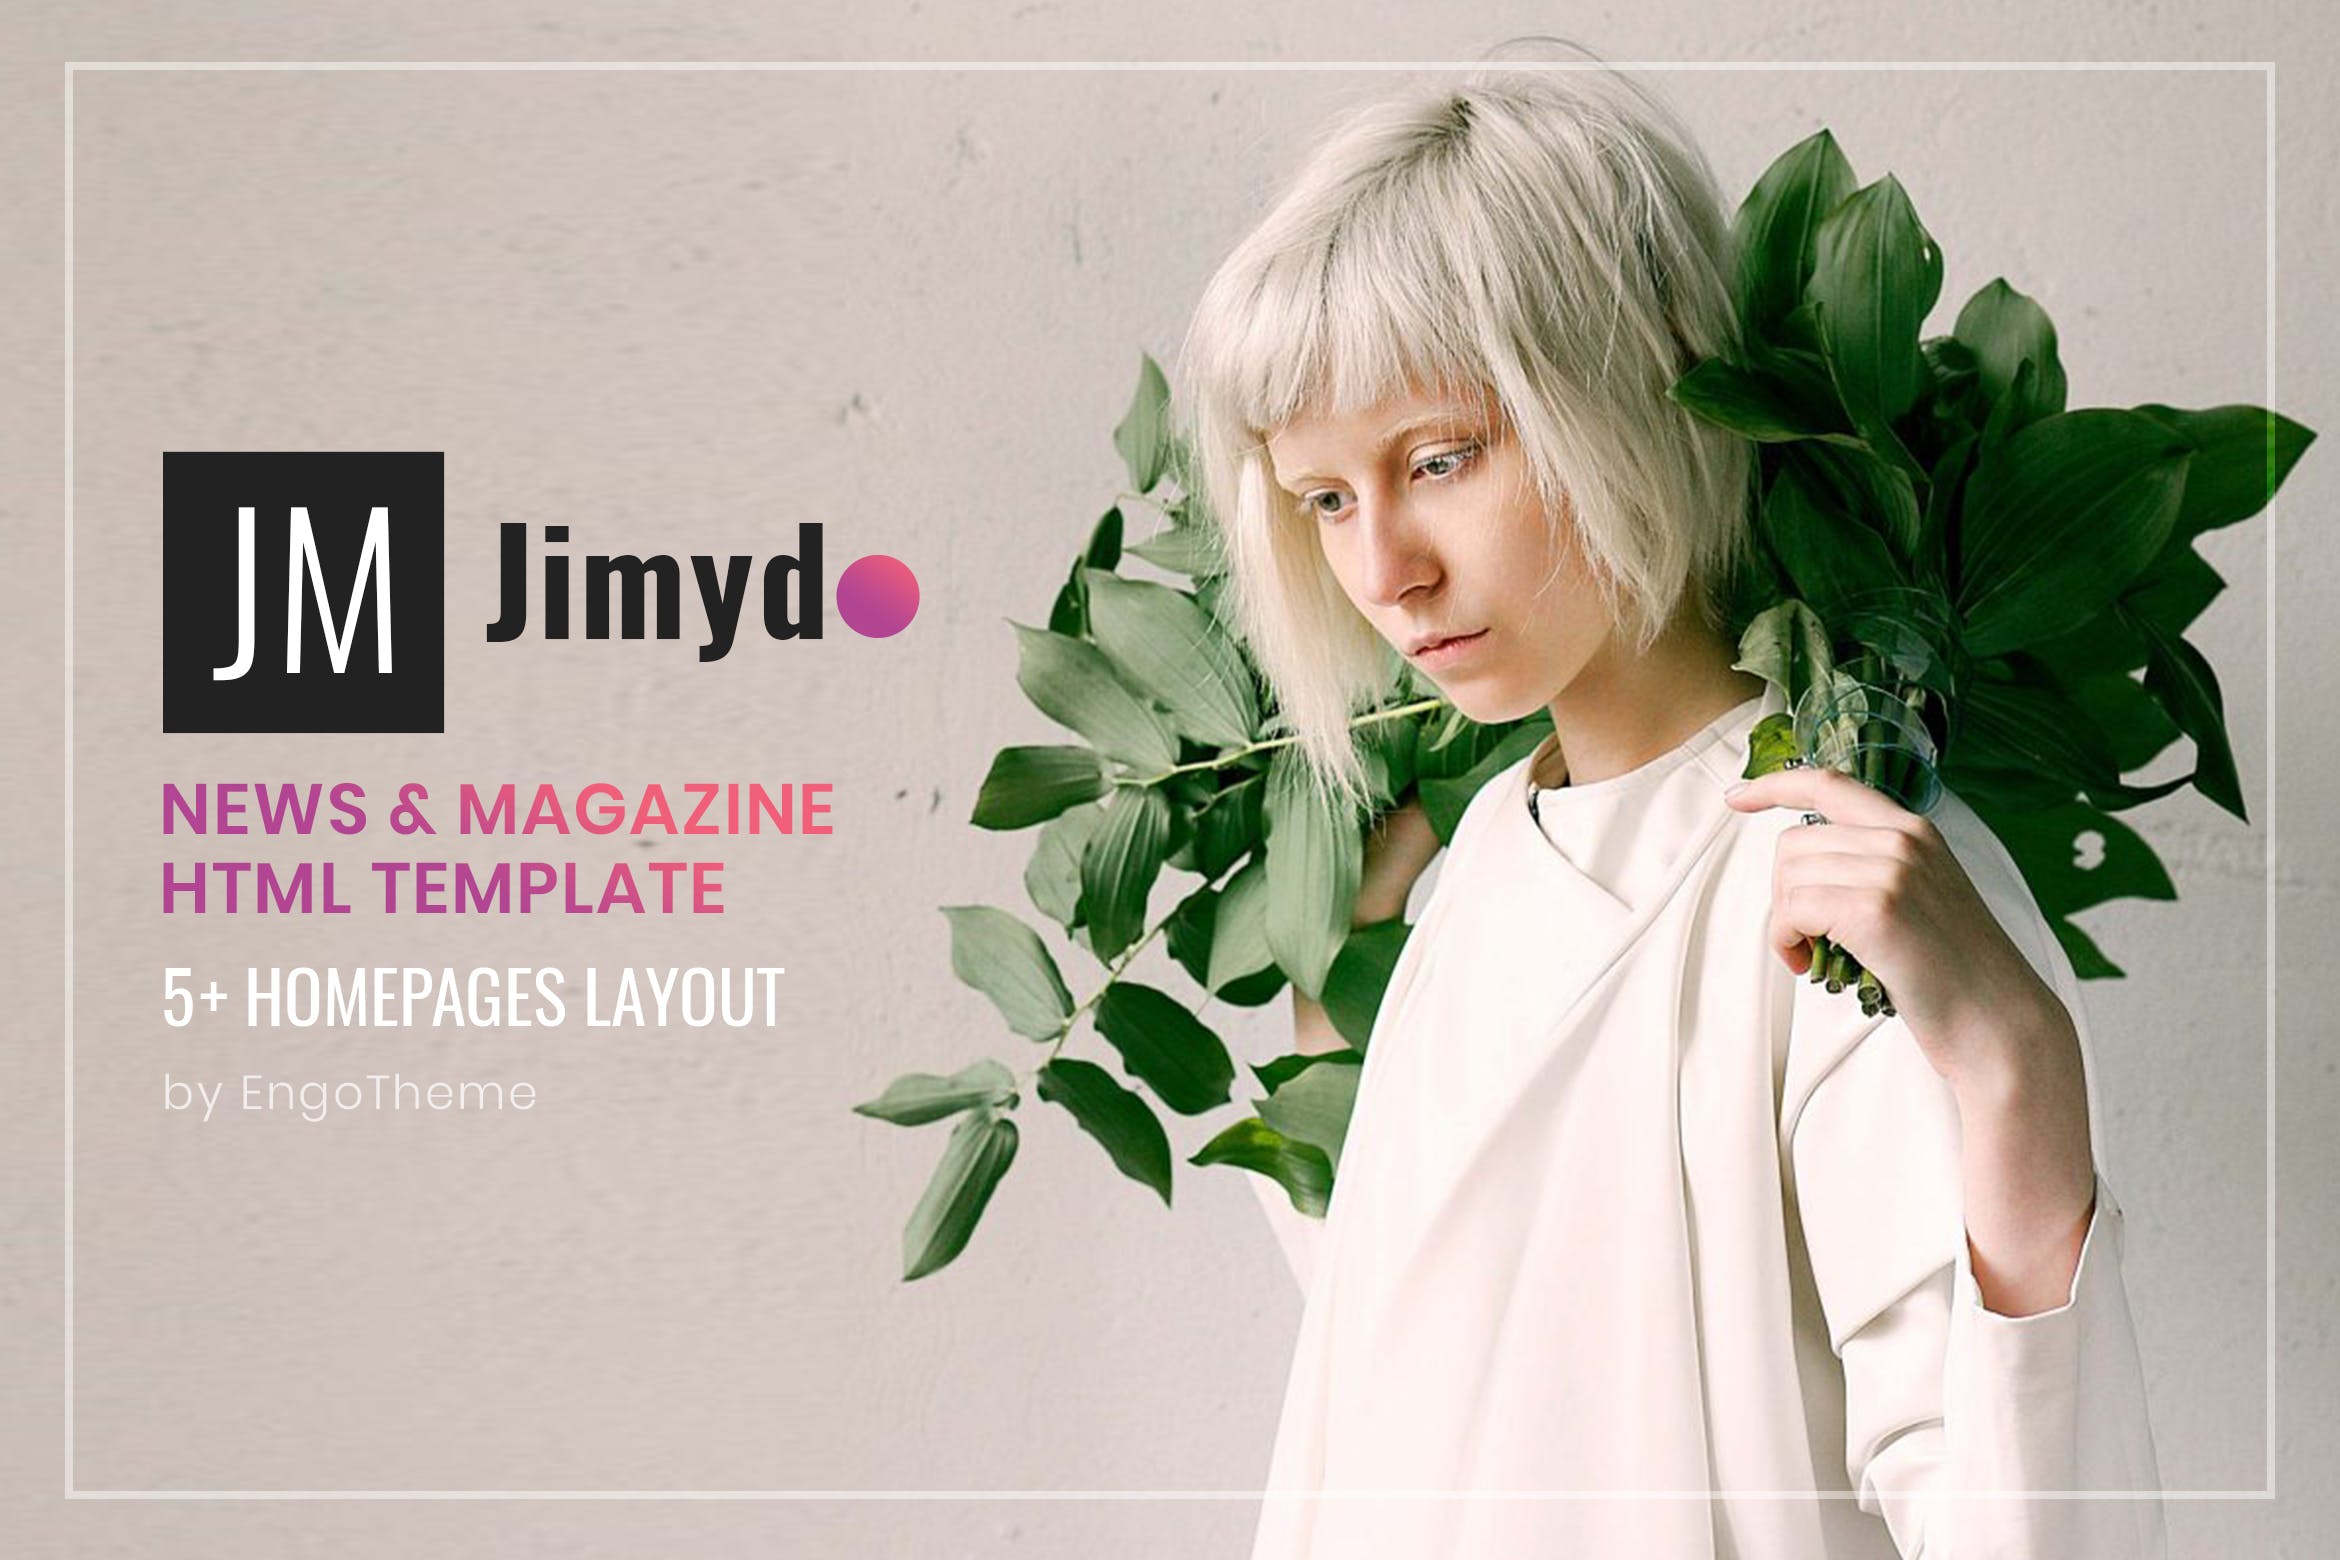 新闻资讯&杂志主题网站建设HTML模板第一素材精选下载 JIMYDO | News & Magazine HTML Template插图